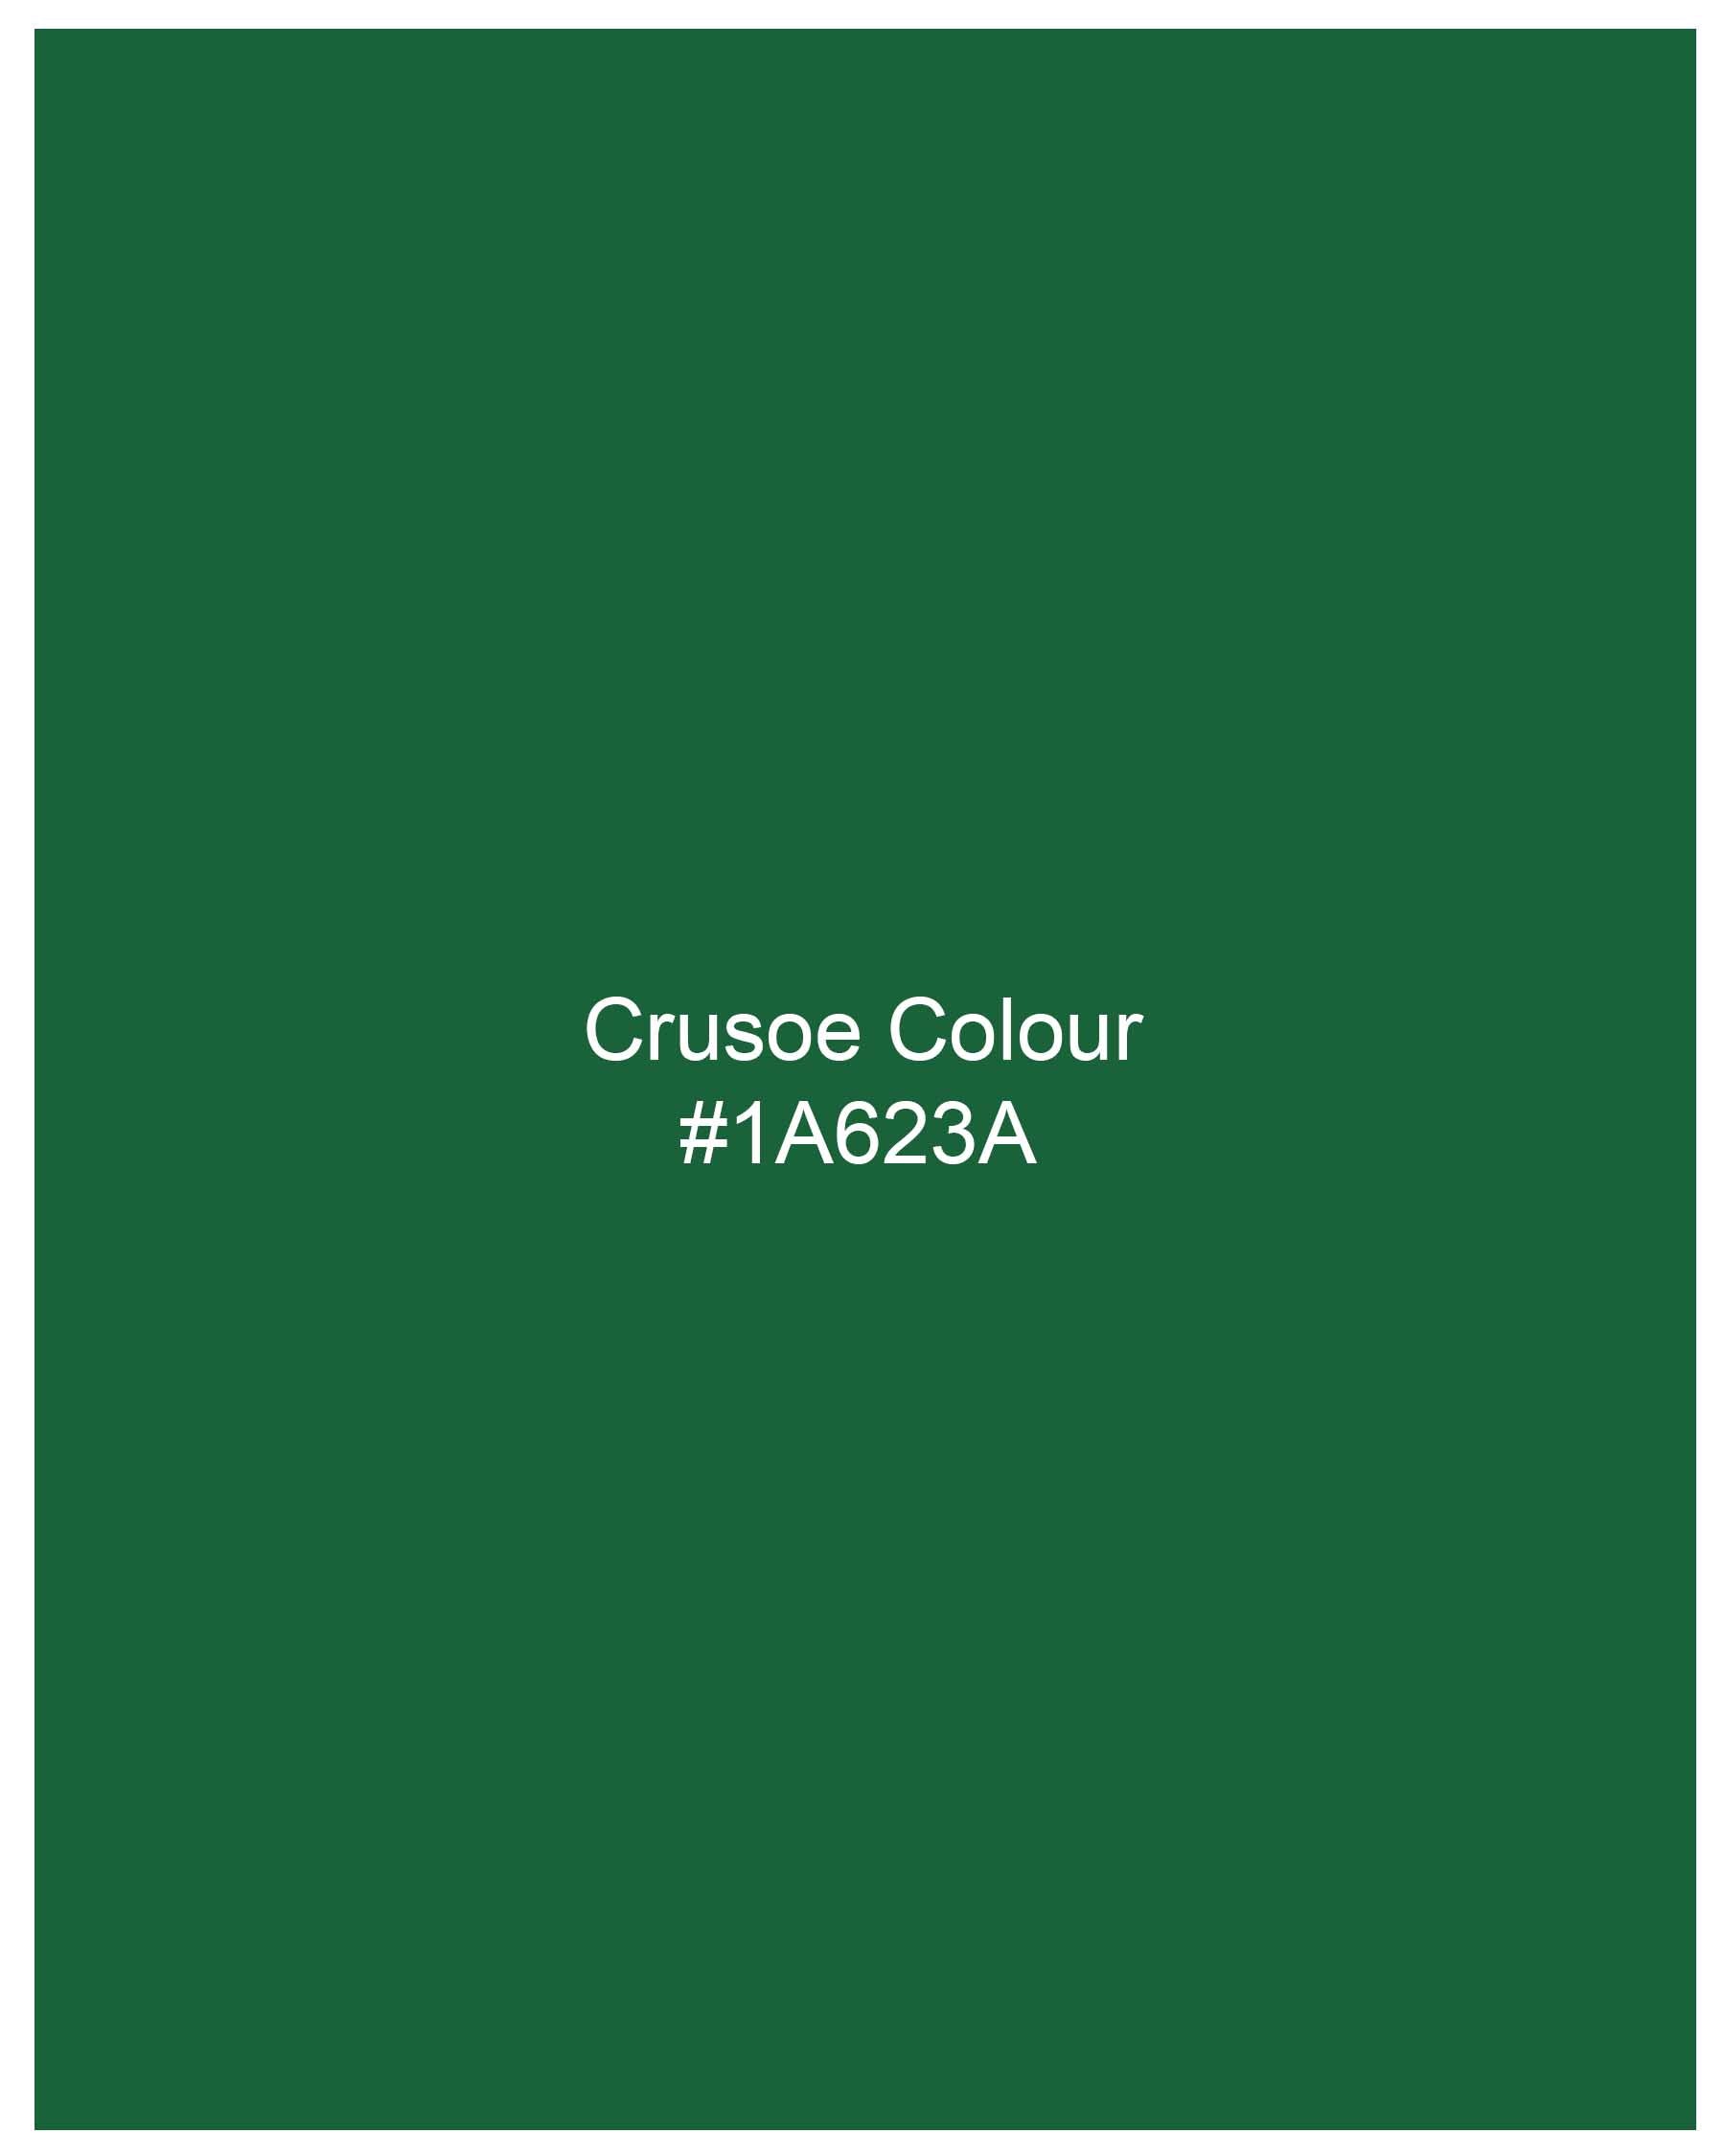 Crusoe Green Luxurious Linen Shirt 7991-M-38, 7991-M-H-38, 7991-M-39, 7991-M-H-39, 7991-M-40, 7991-M-H-40, 7991-M-42, 7991-M-H-42, 7991-M-44, 7991-M-H-44, 7991-M-46, 7991-M-H-46, 7991-M-48, 7991-M-H-48, 7991-M-50, 7991-M-H-50, 7991-M-52, 7991-M-H-52